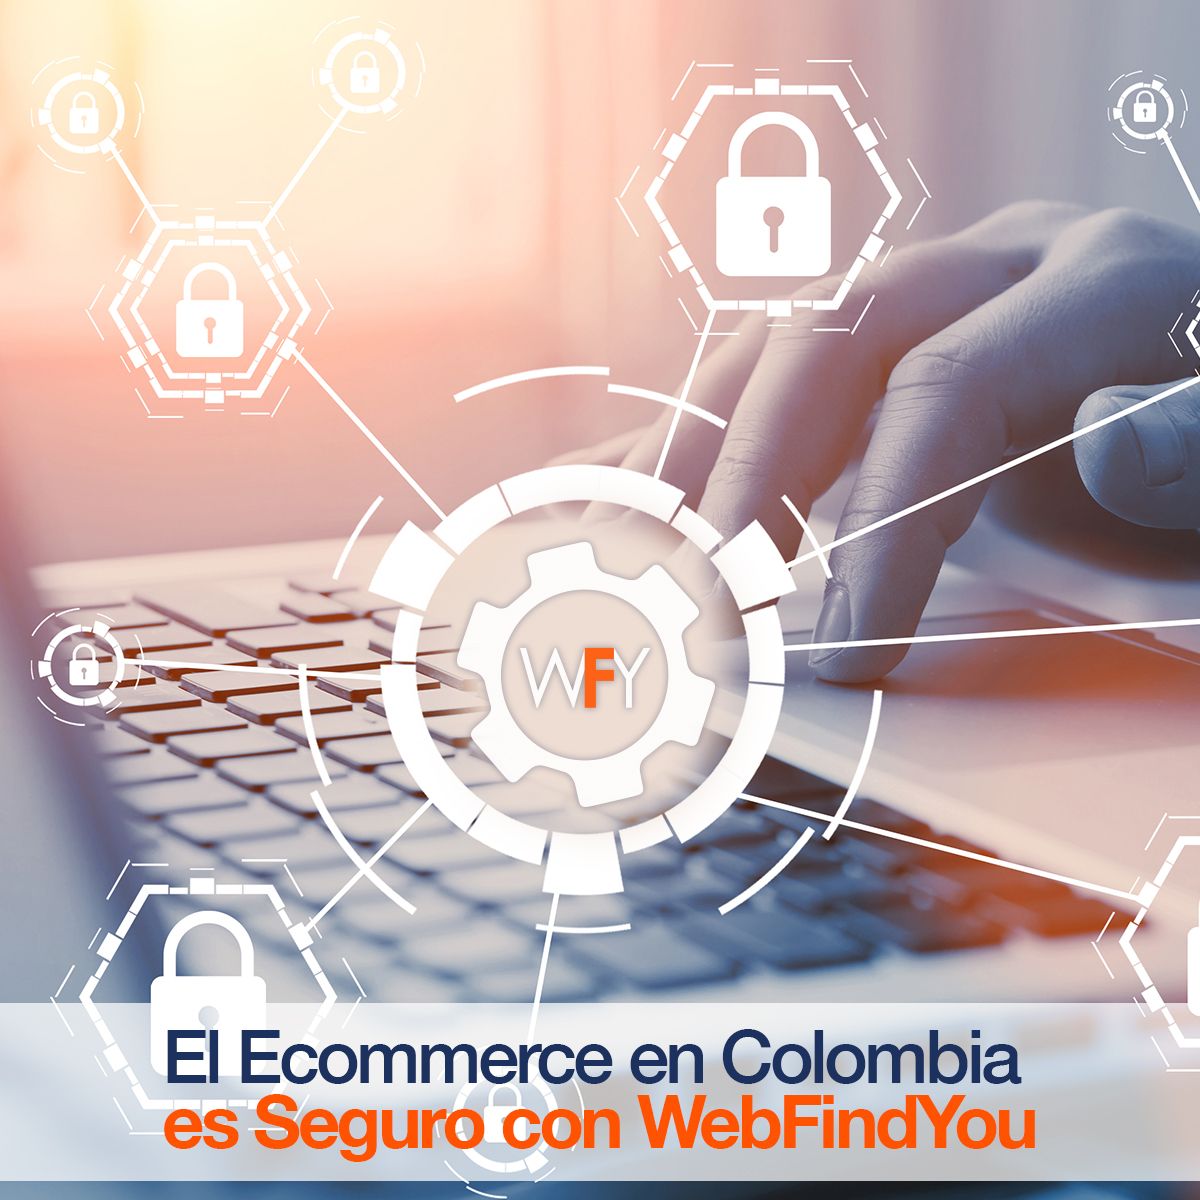 El Ecommerce en Colombia es Seguro con WebFindYou